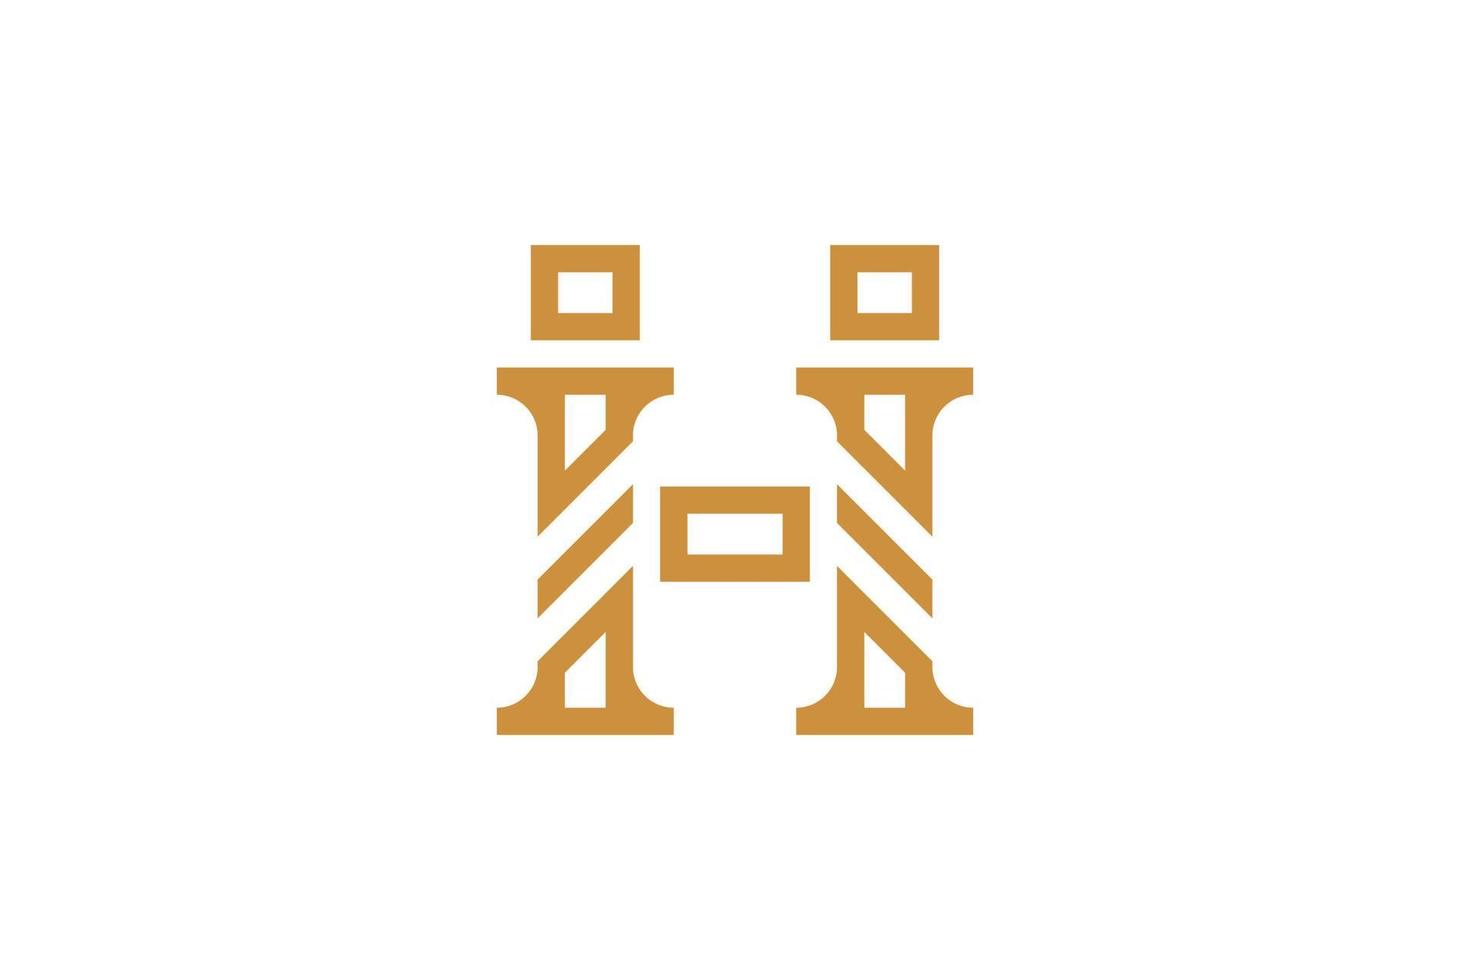 h lettere logo design vettore